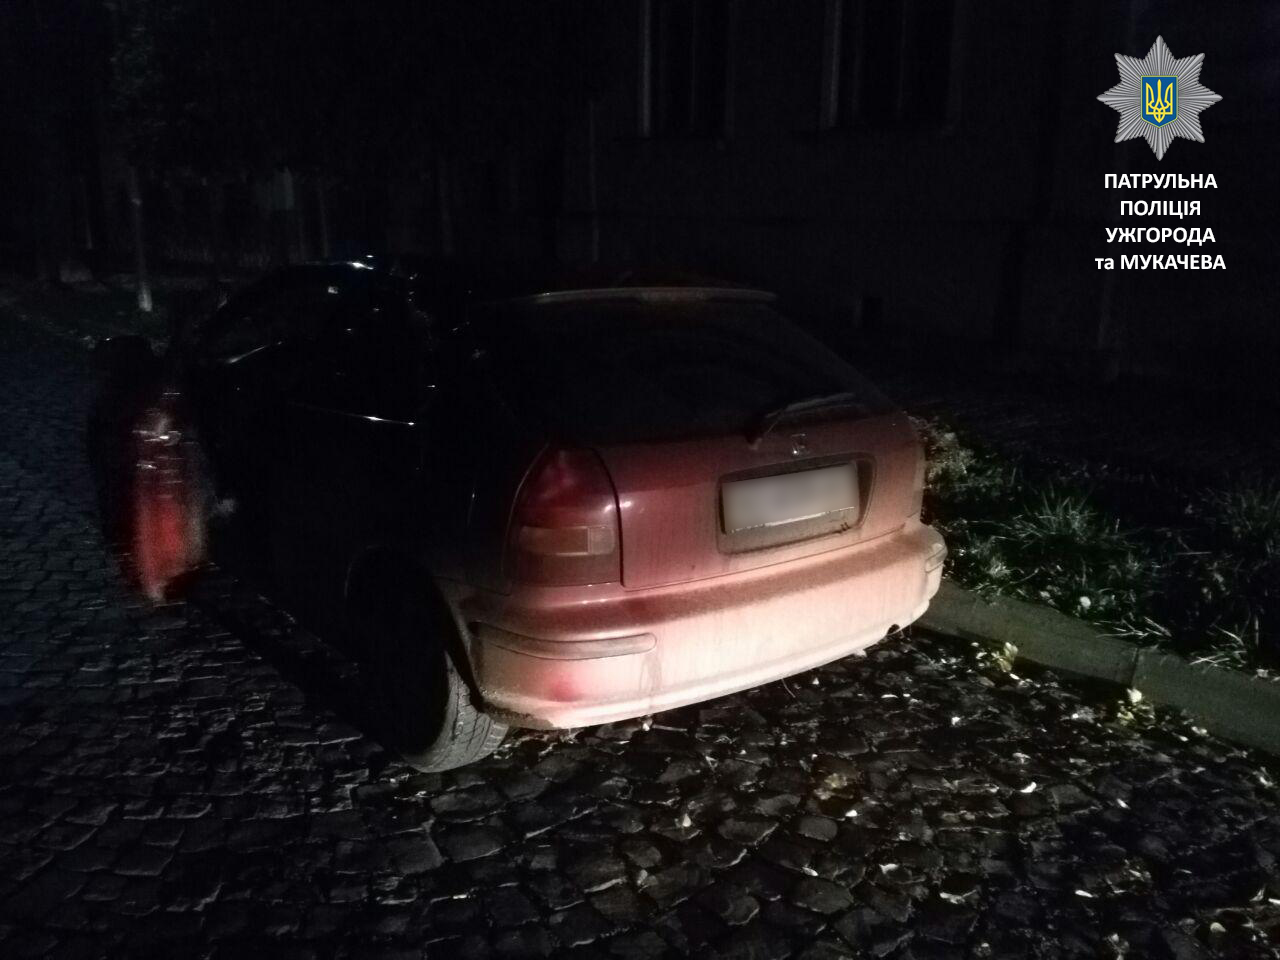 Сегодня под утро мукачевские патрульные остановили автомобиль Honda Сivic за нарушение ПДД. Происшествие случилось около 5:30 на улице Ярослава Мудрого.